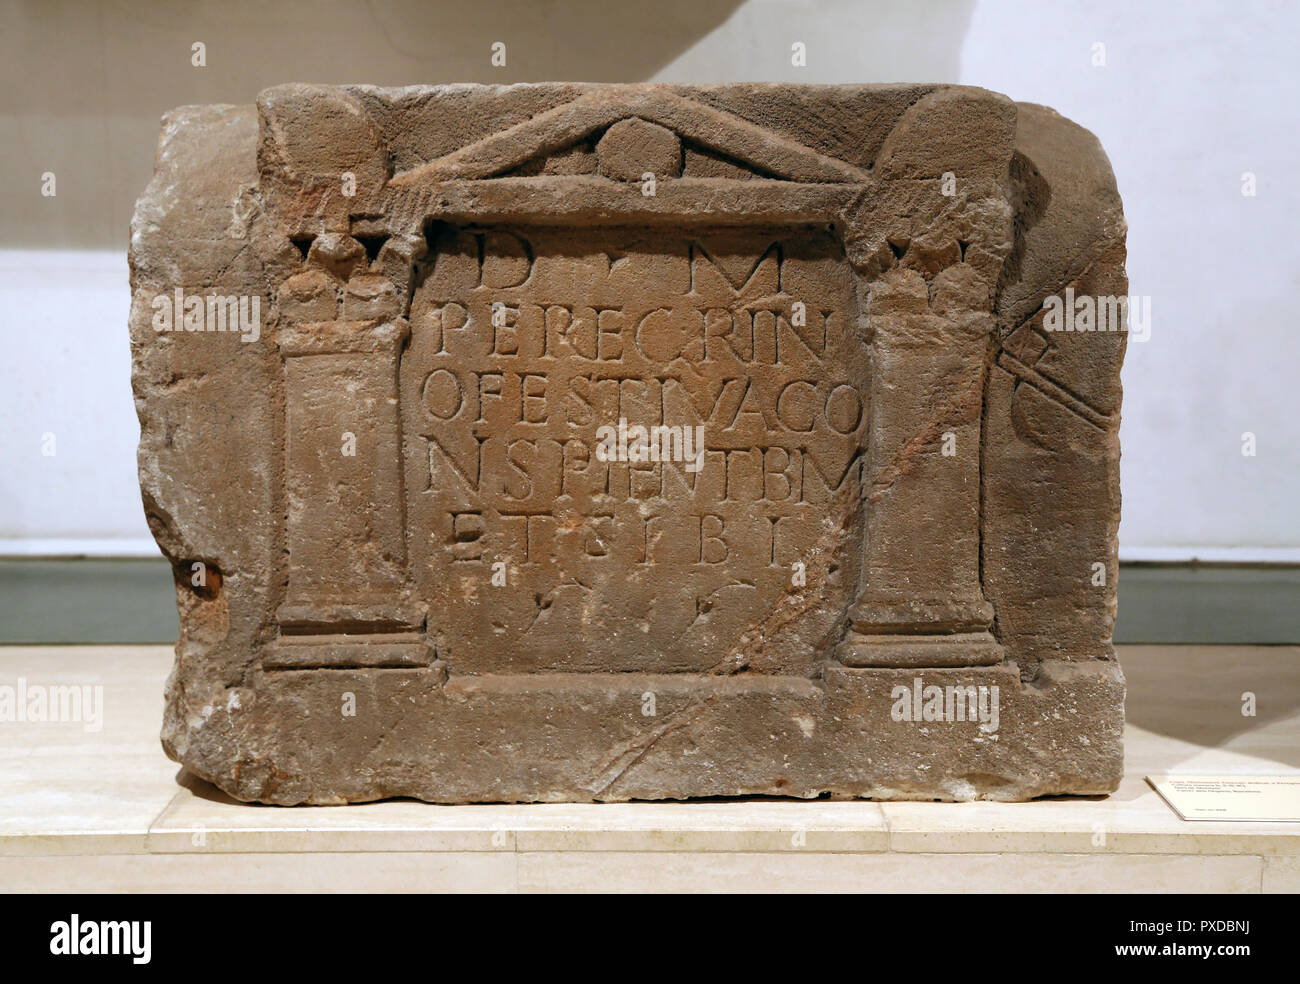 L'association. Stèle funéraire romain, la culture romaine (2ème-3ème siècles) dédié à peregrinus. Grès de Montjuic. Banque D'Images